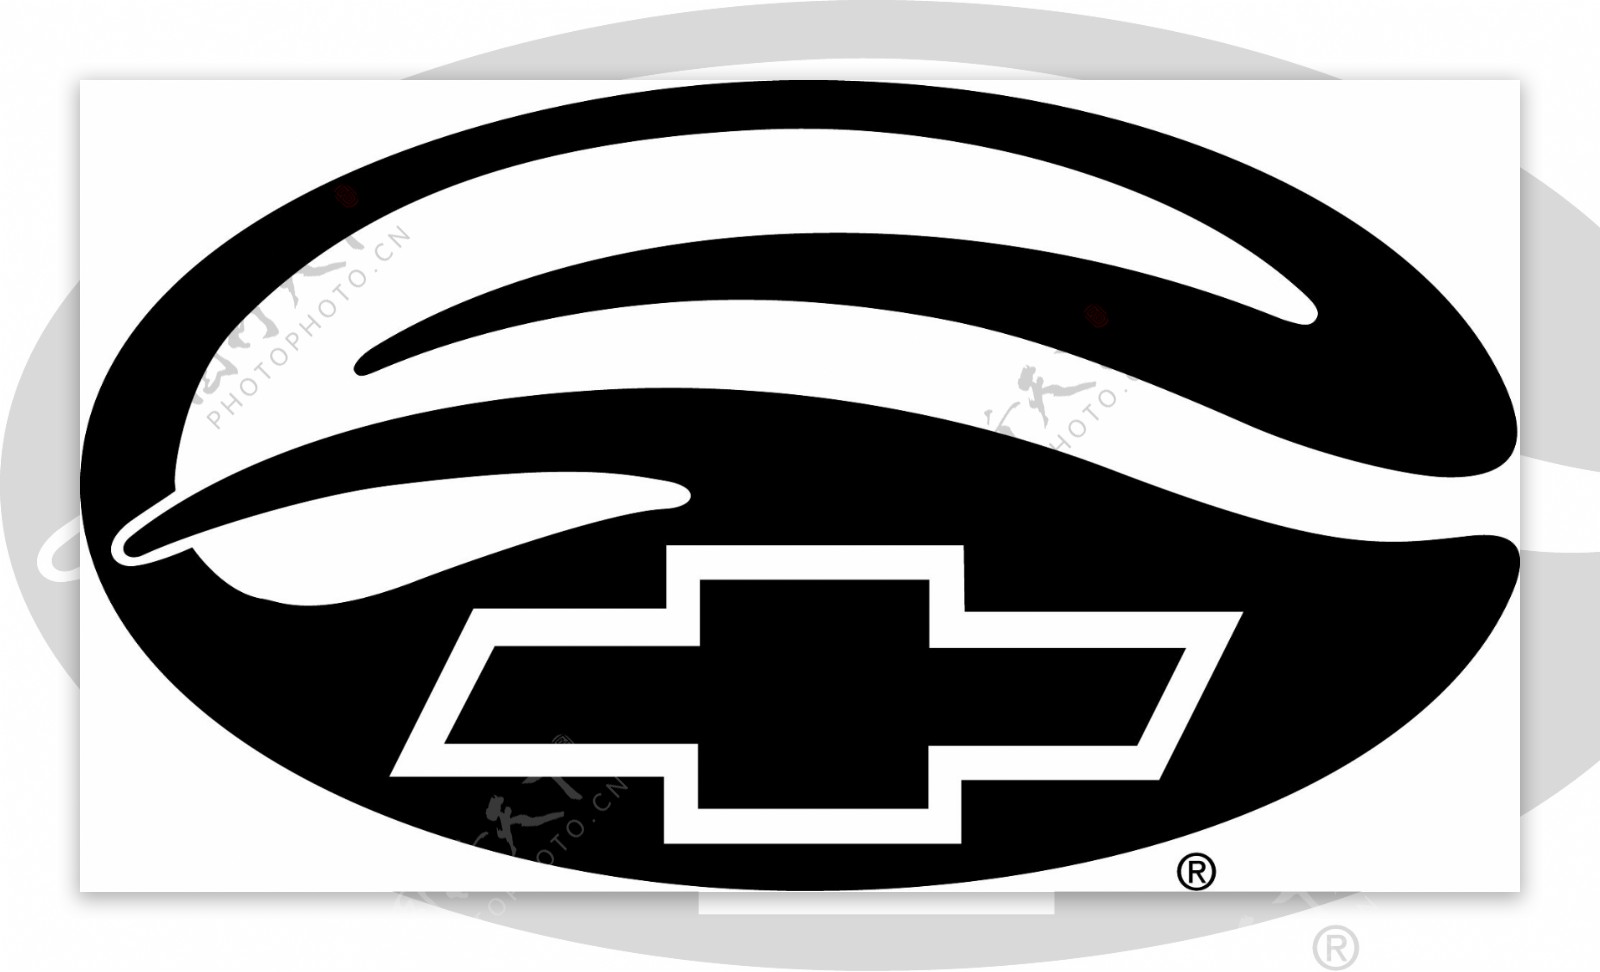 马里布通用汽车logo2